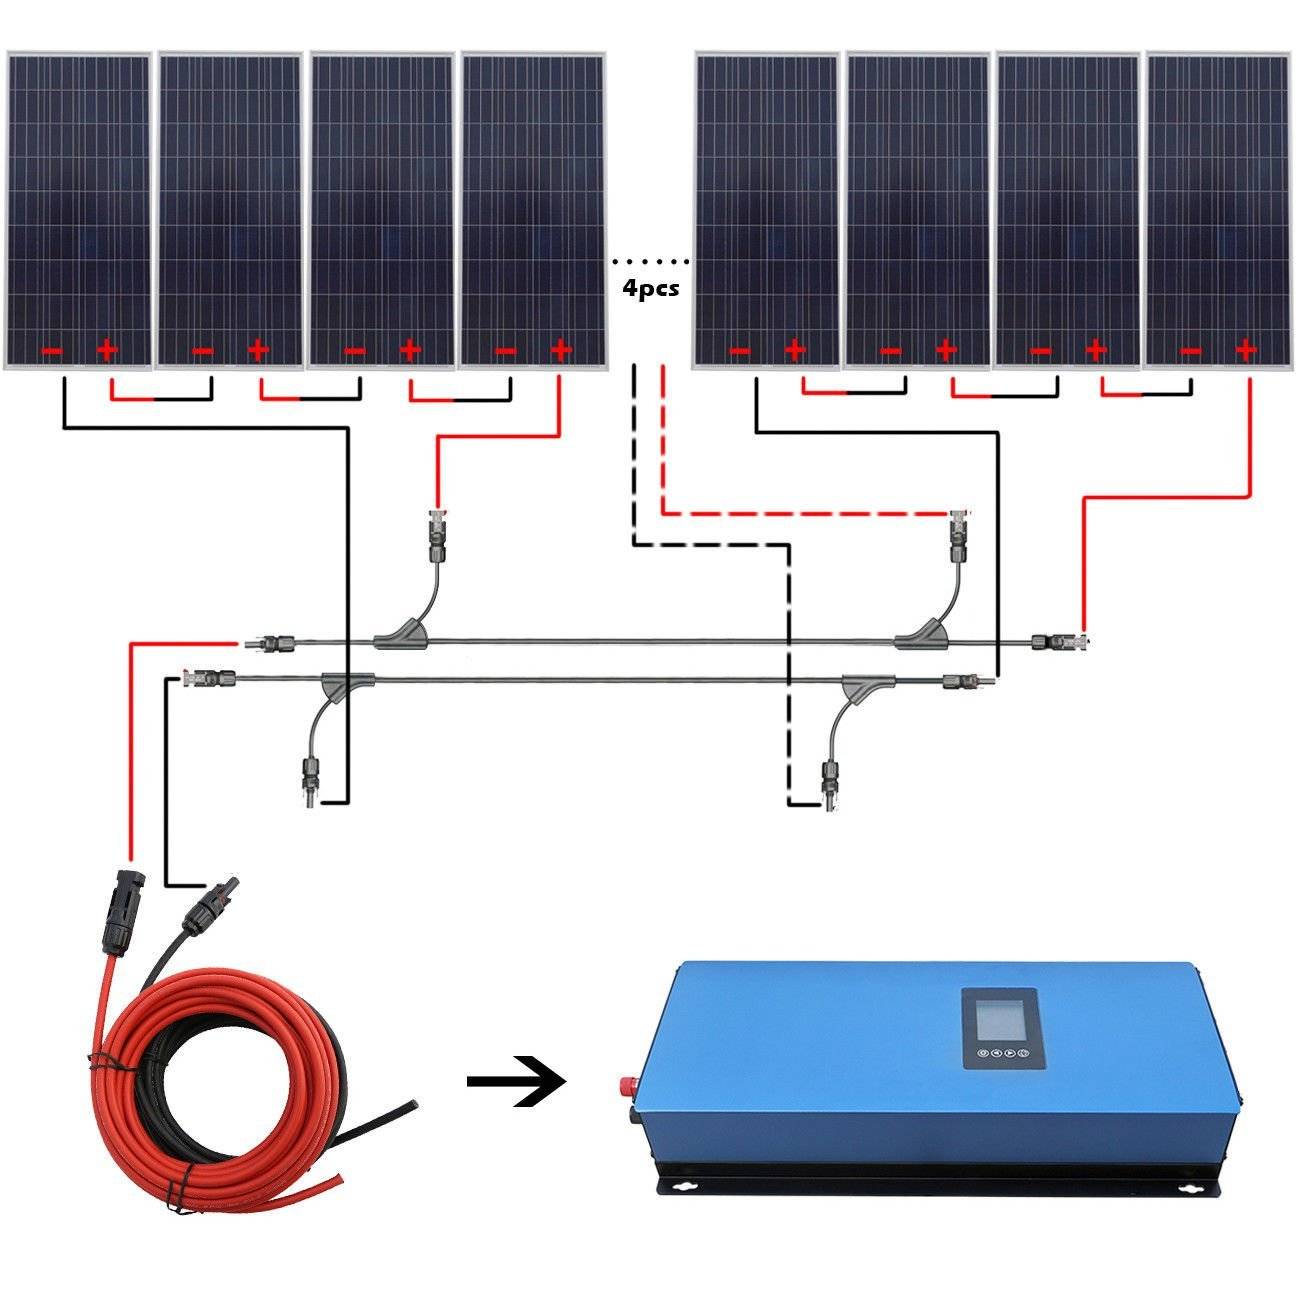 Схема подключения солнечных батарей » сайт для электриков - советы, примеры, схемы